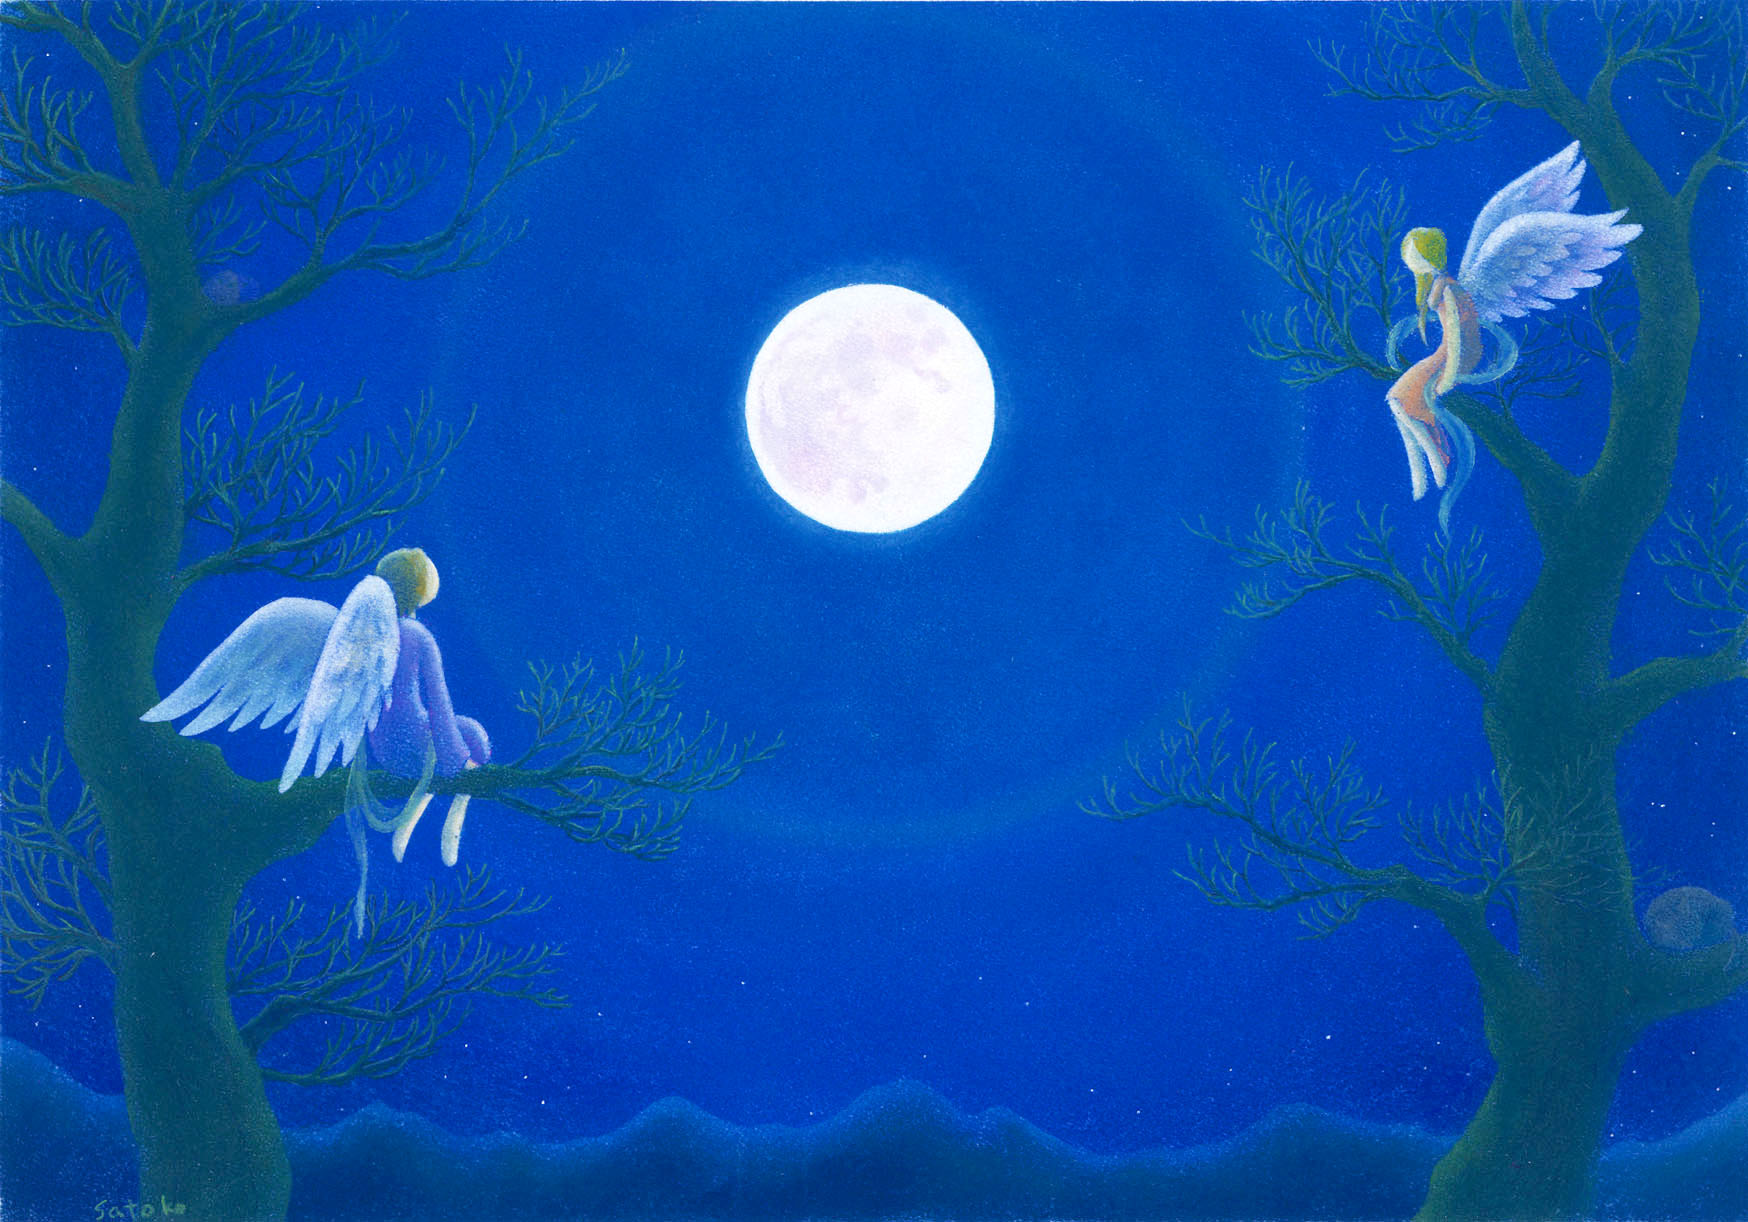 wish upon the full moon - II